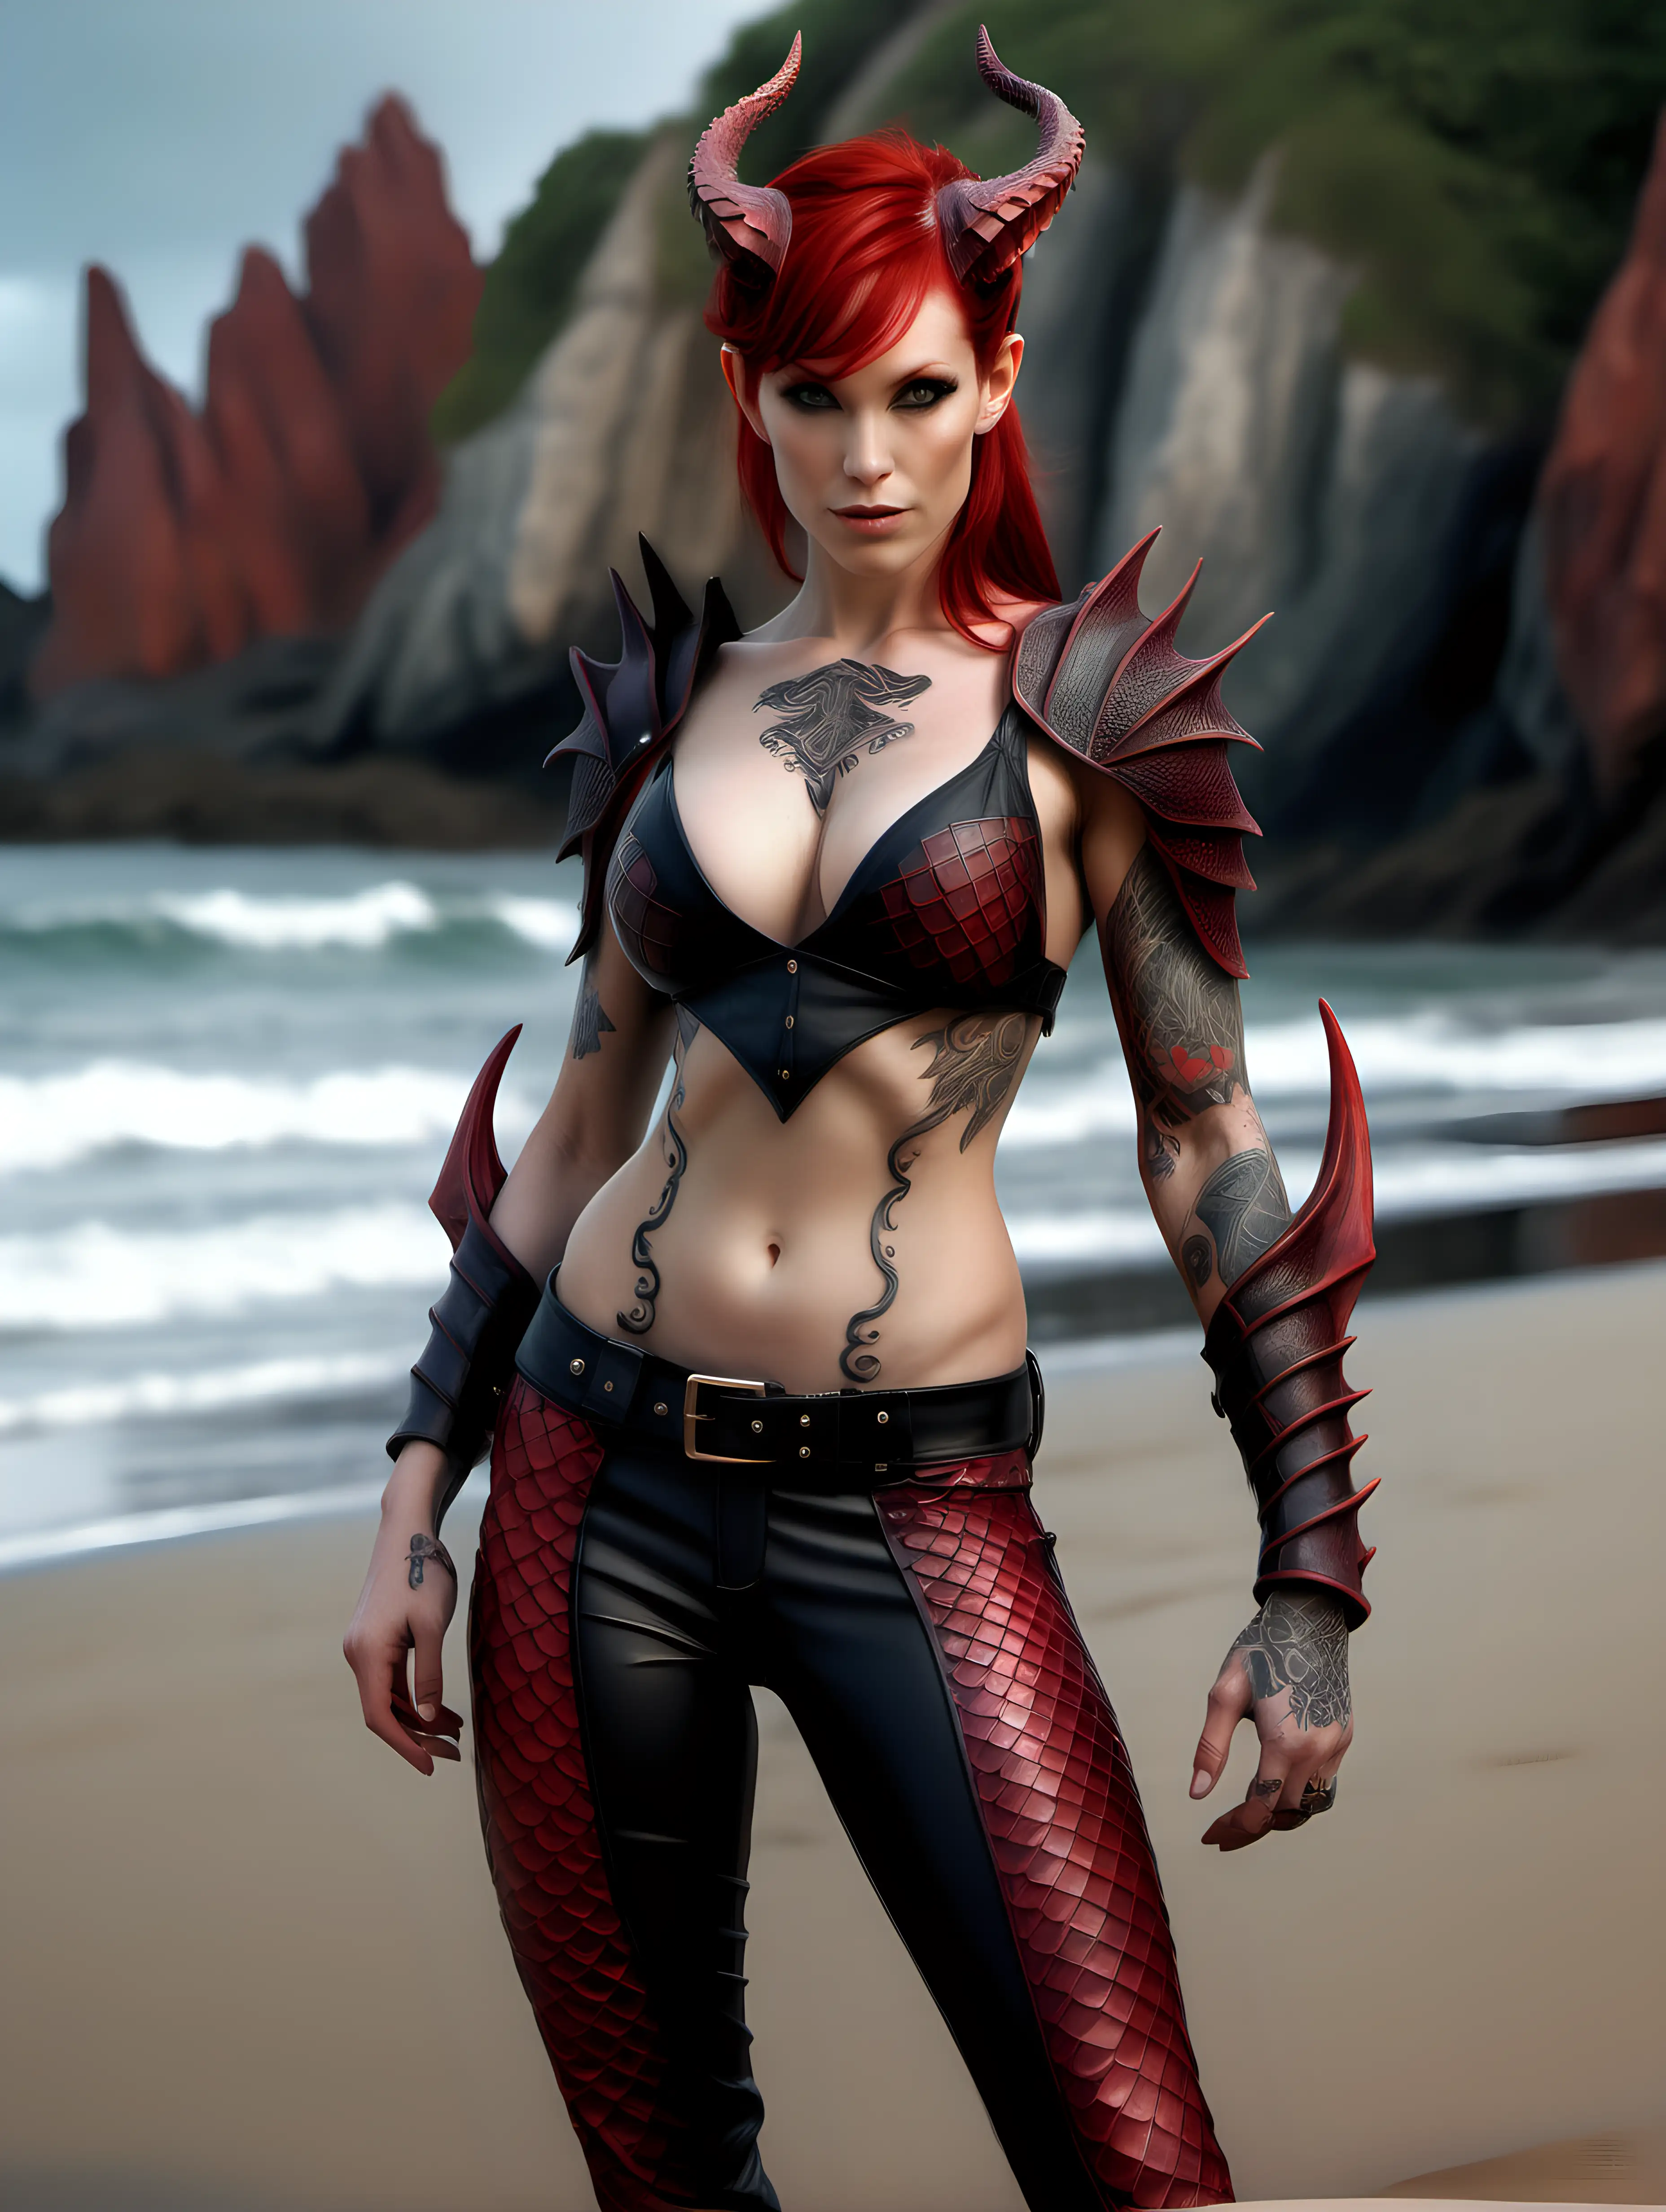 Sleek Female Dragonrider Mythical Rider on Beach with Dragonic Attire